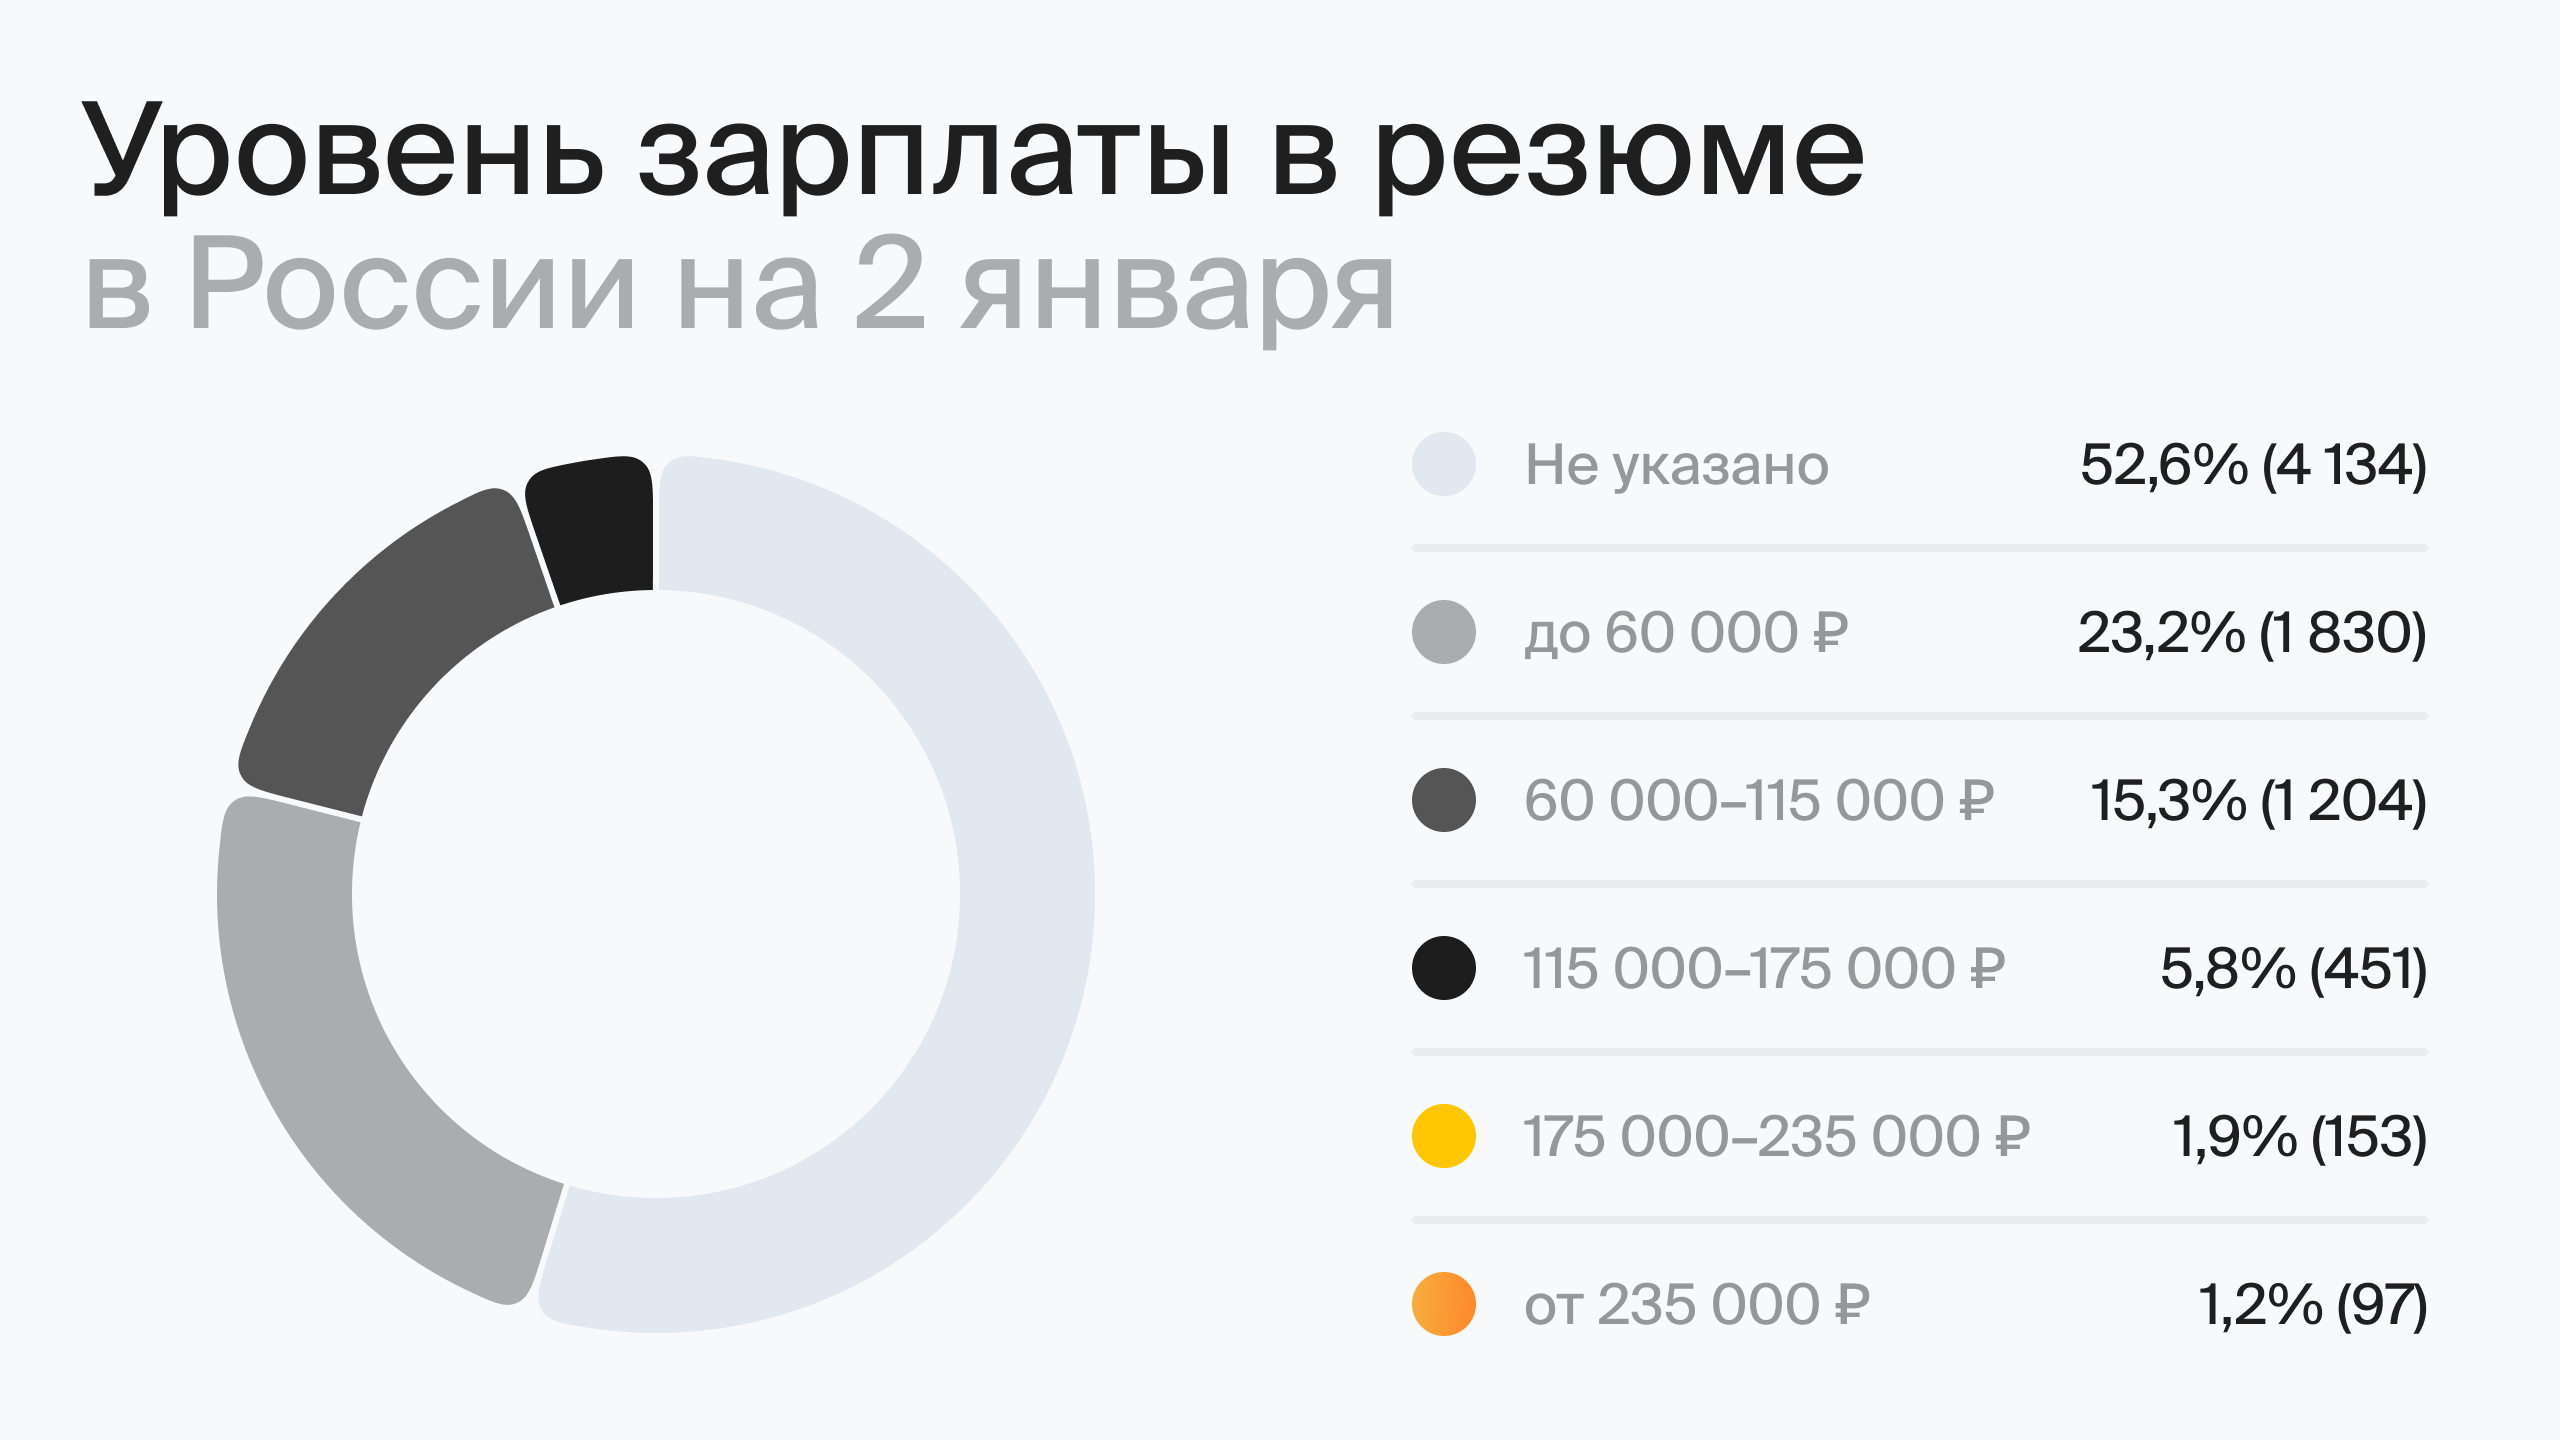 Уровень зарплаты в резюме в России на 2 января (по данным hh.ru)